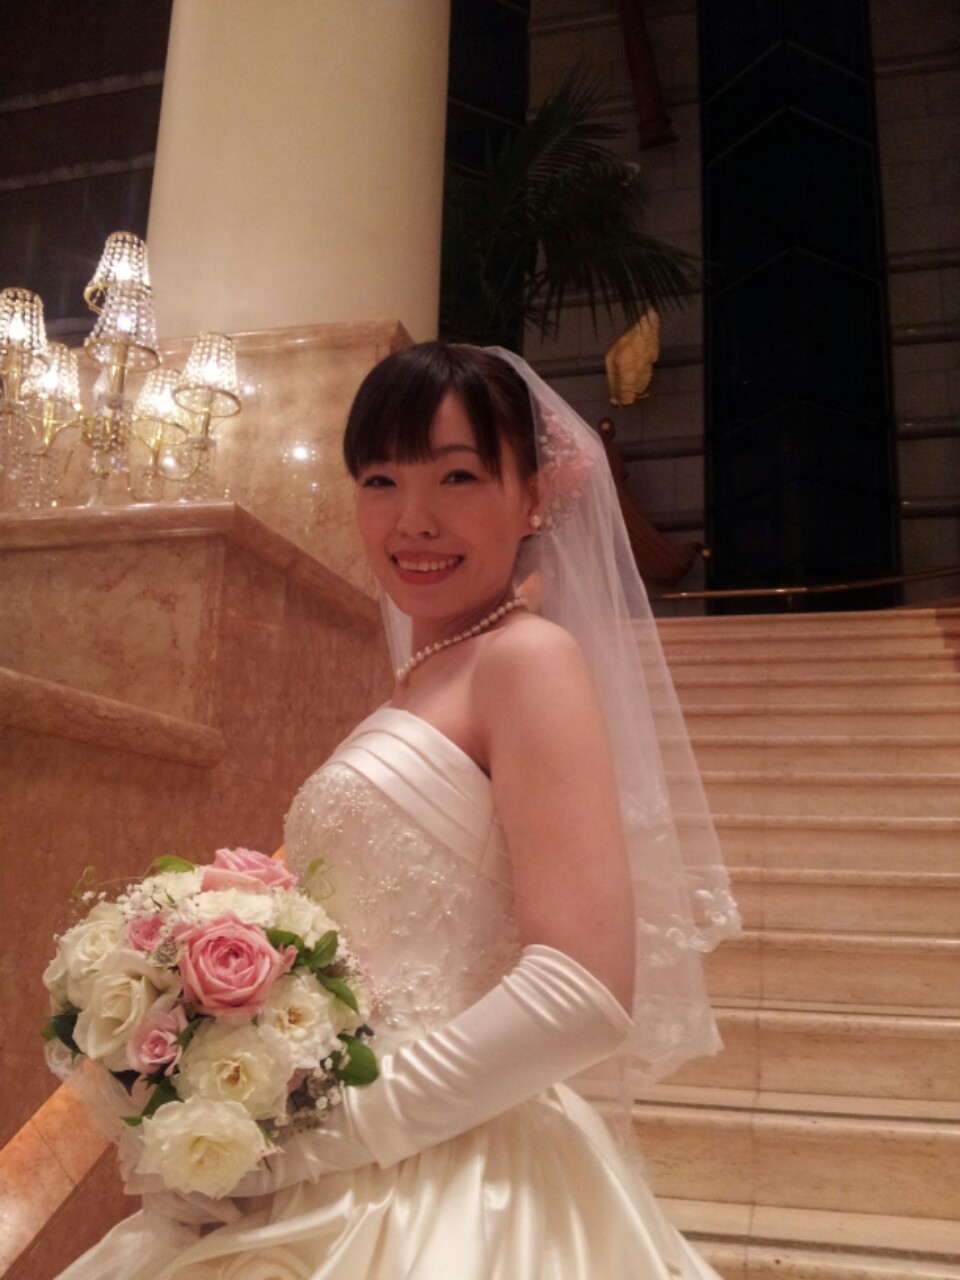 インターコンチネンタル横浜 結婚式 ブライダルヘアメイク アーチェロのお仕事ブログ